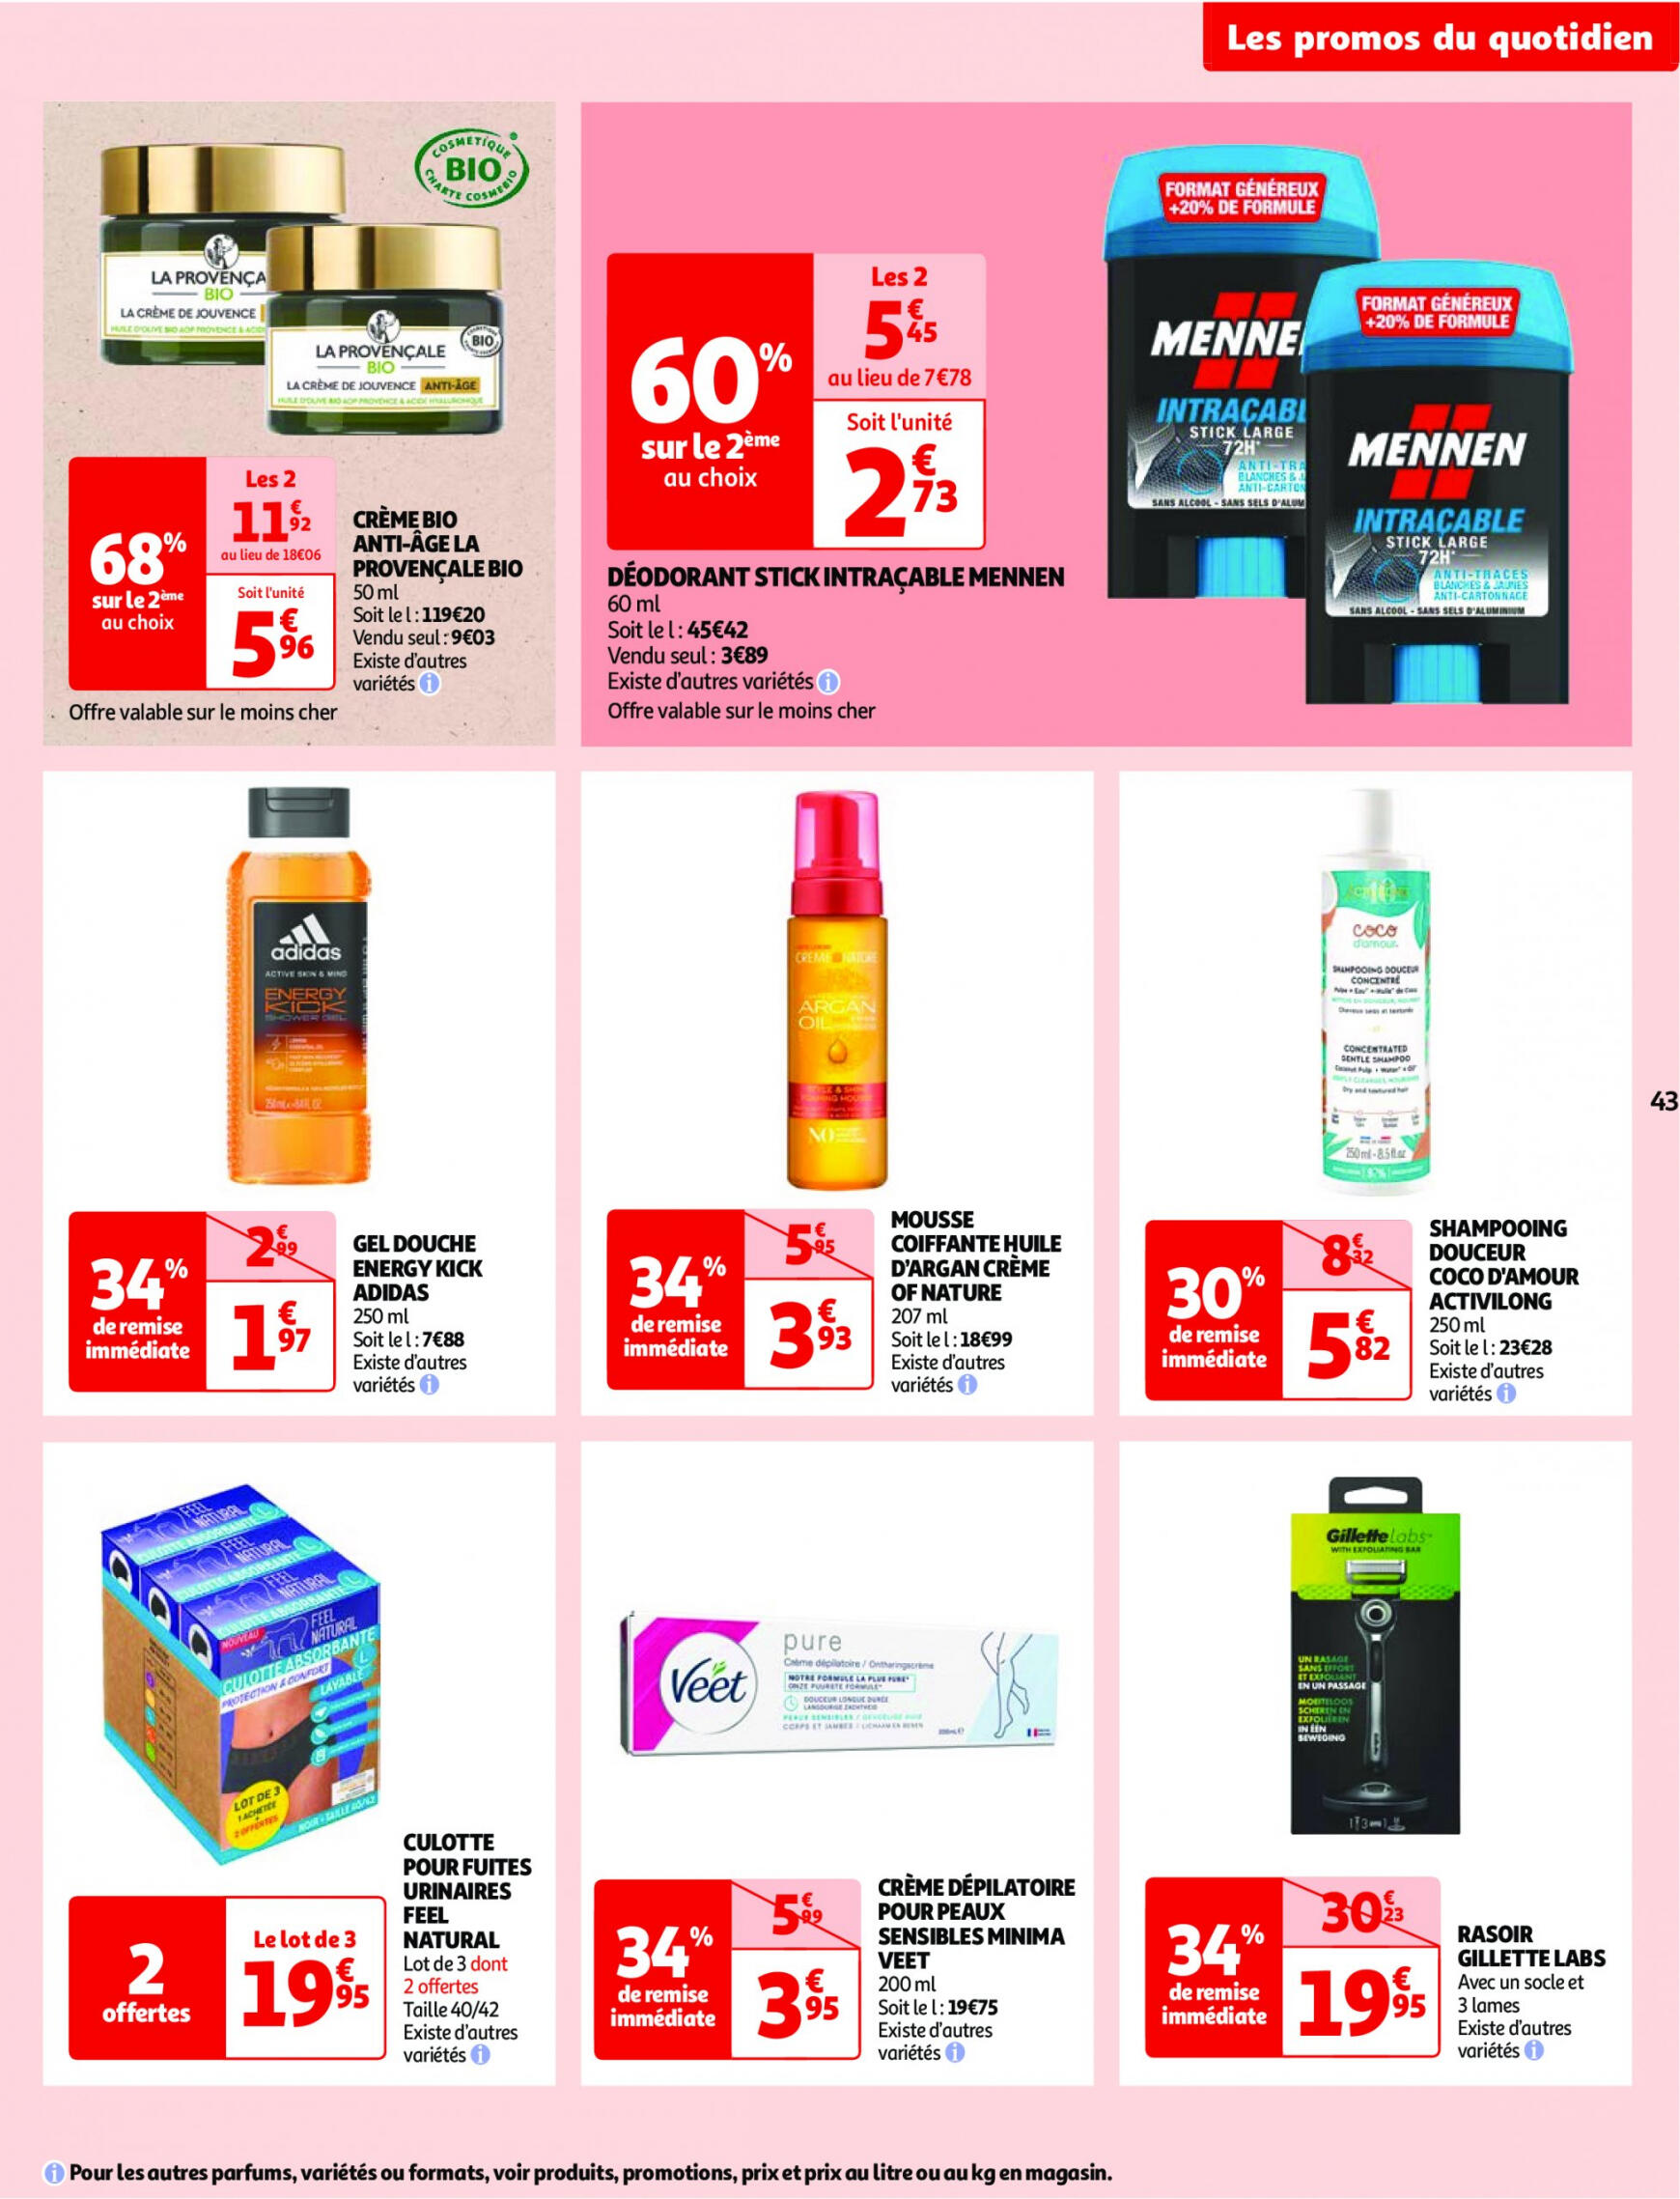 auchan - Auchan - Nos surgelés ont tout bon folder huidig 14.05. - 21.05. - page: 43